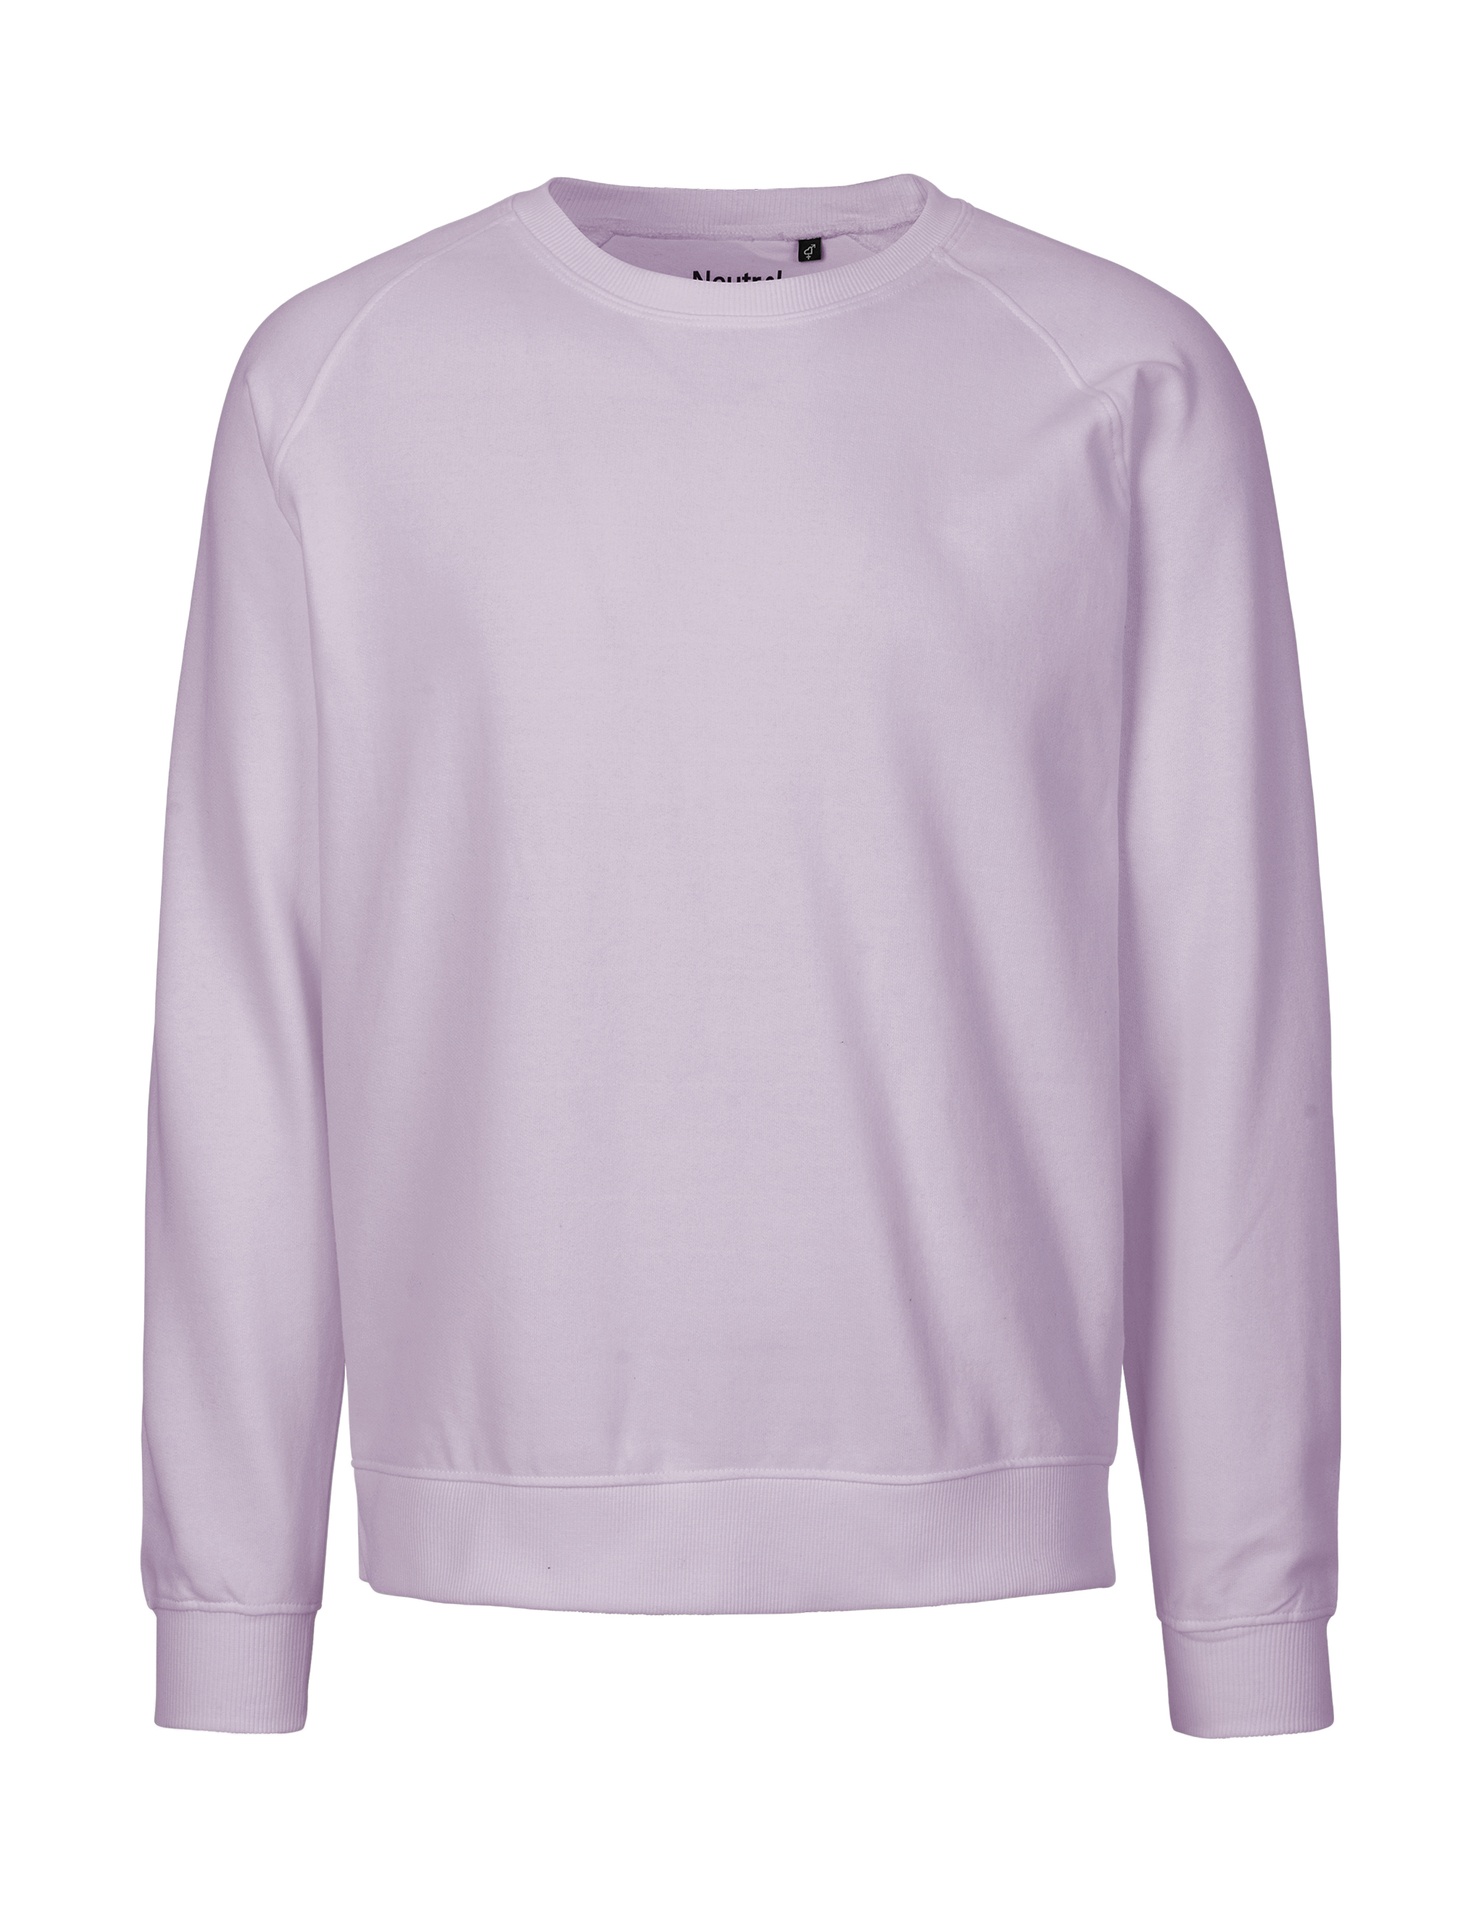 [PR/02845] Unisex Sweatshirt (Dusty Purple 42, XL)